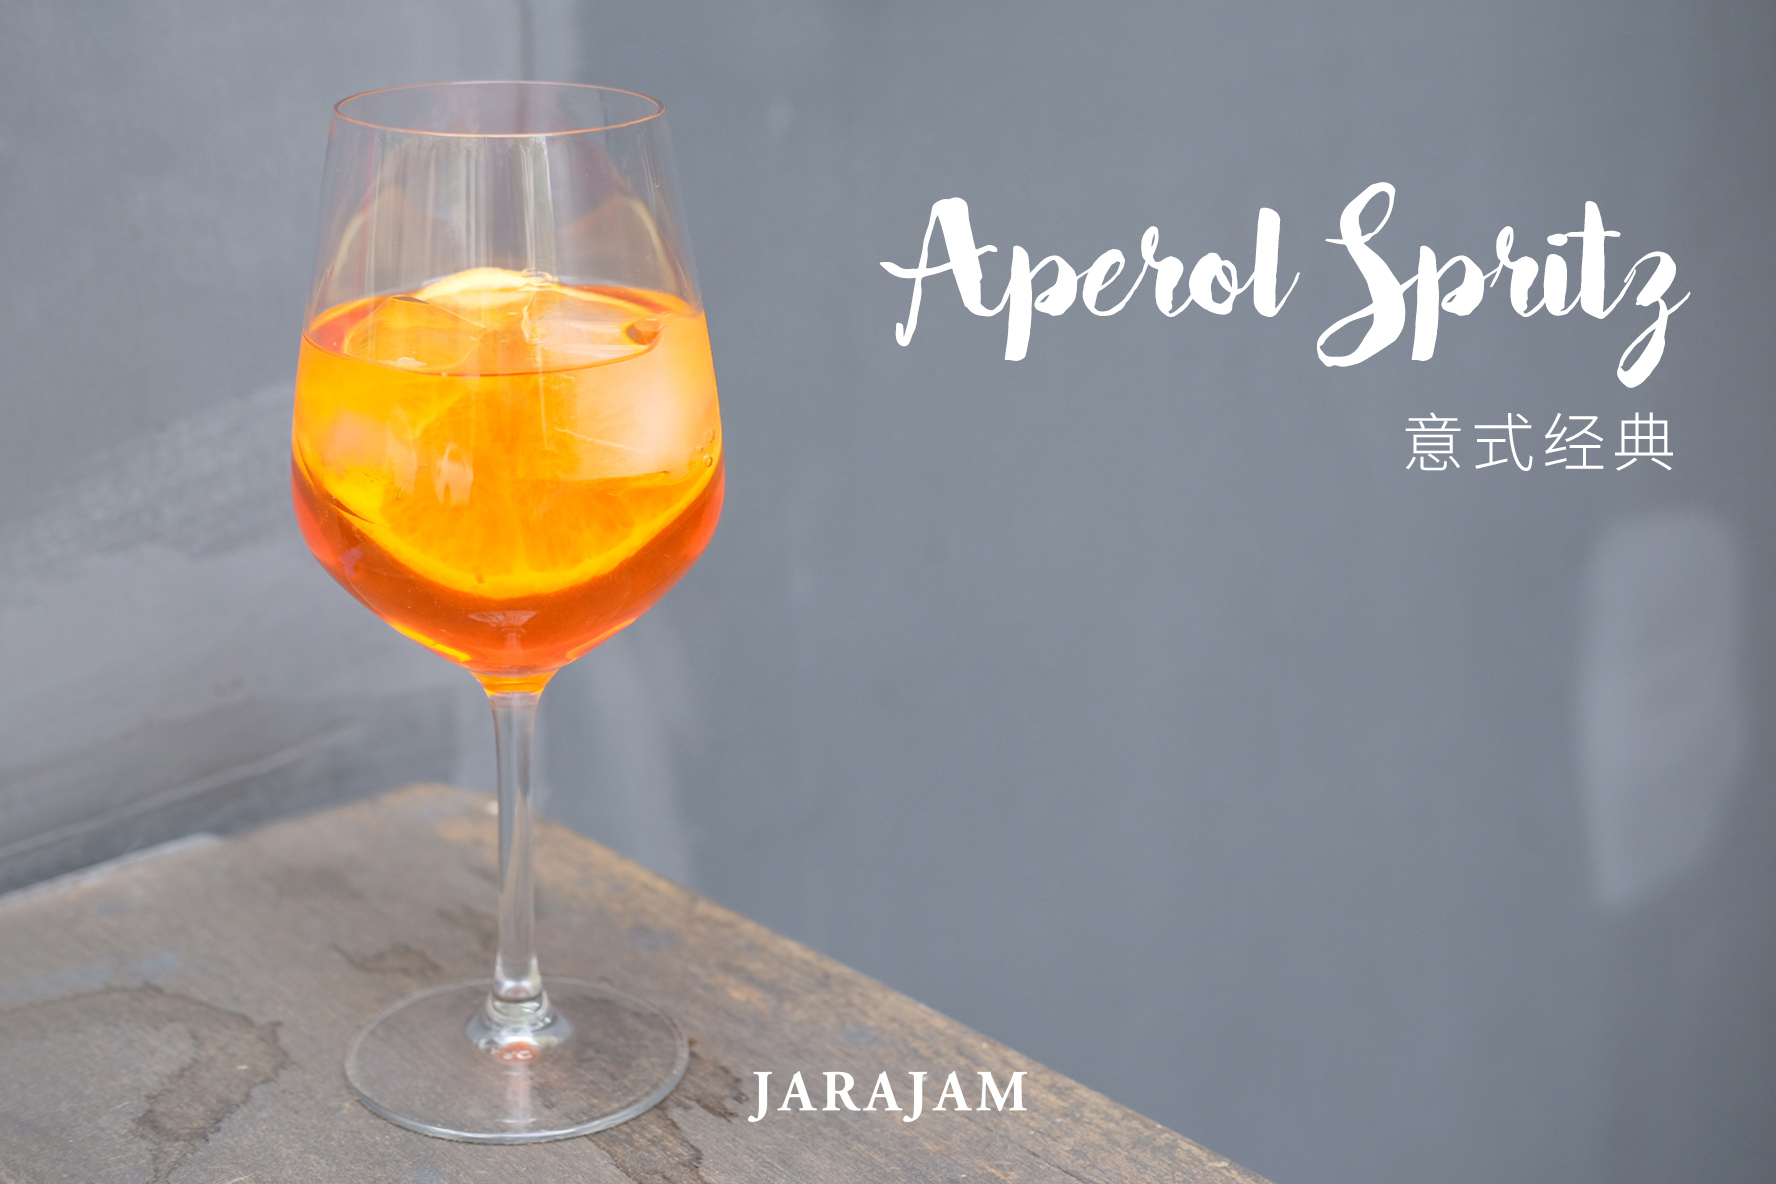 一分钟上手自制经典鸡尾酒-Aperol Spritz 意式经典橙味酒